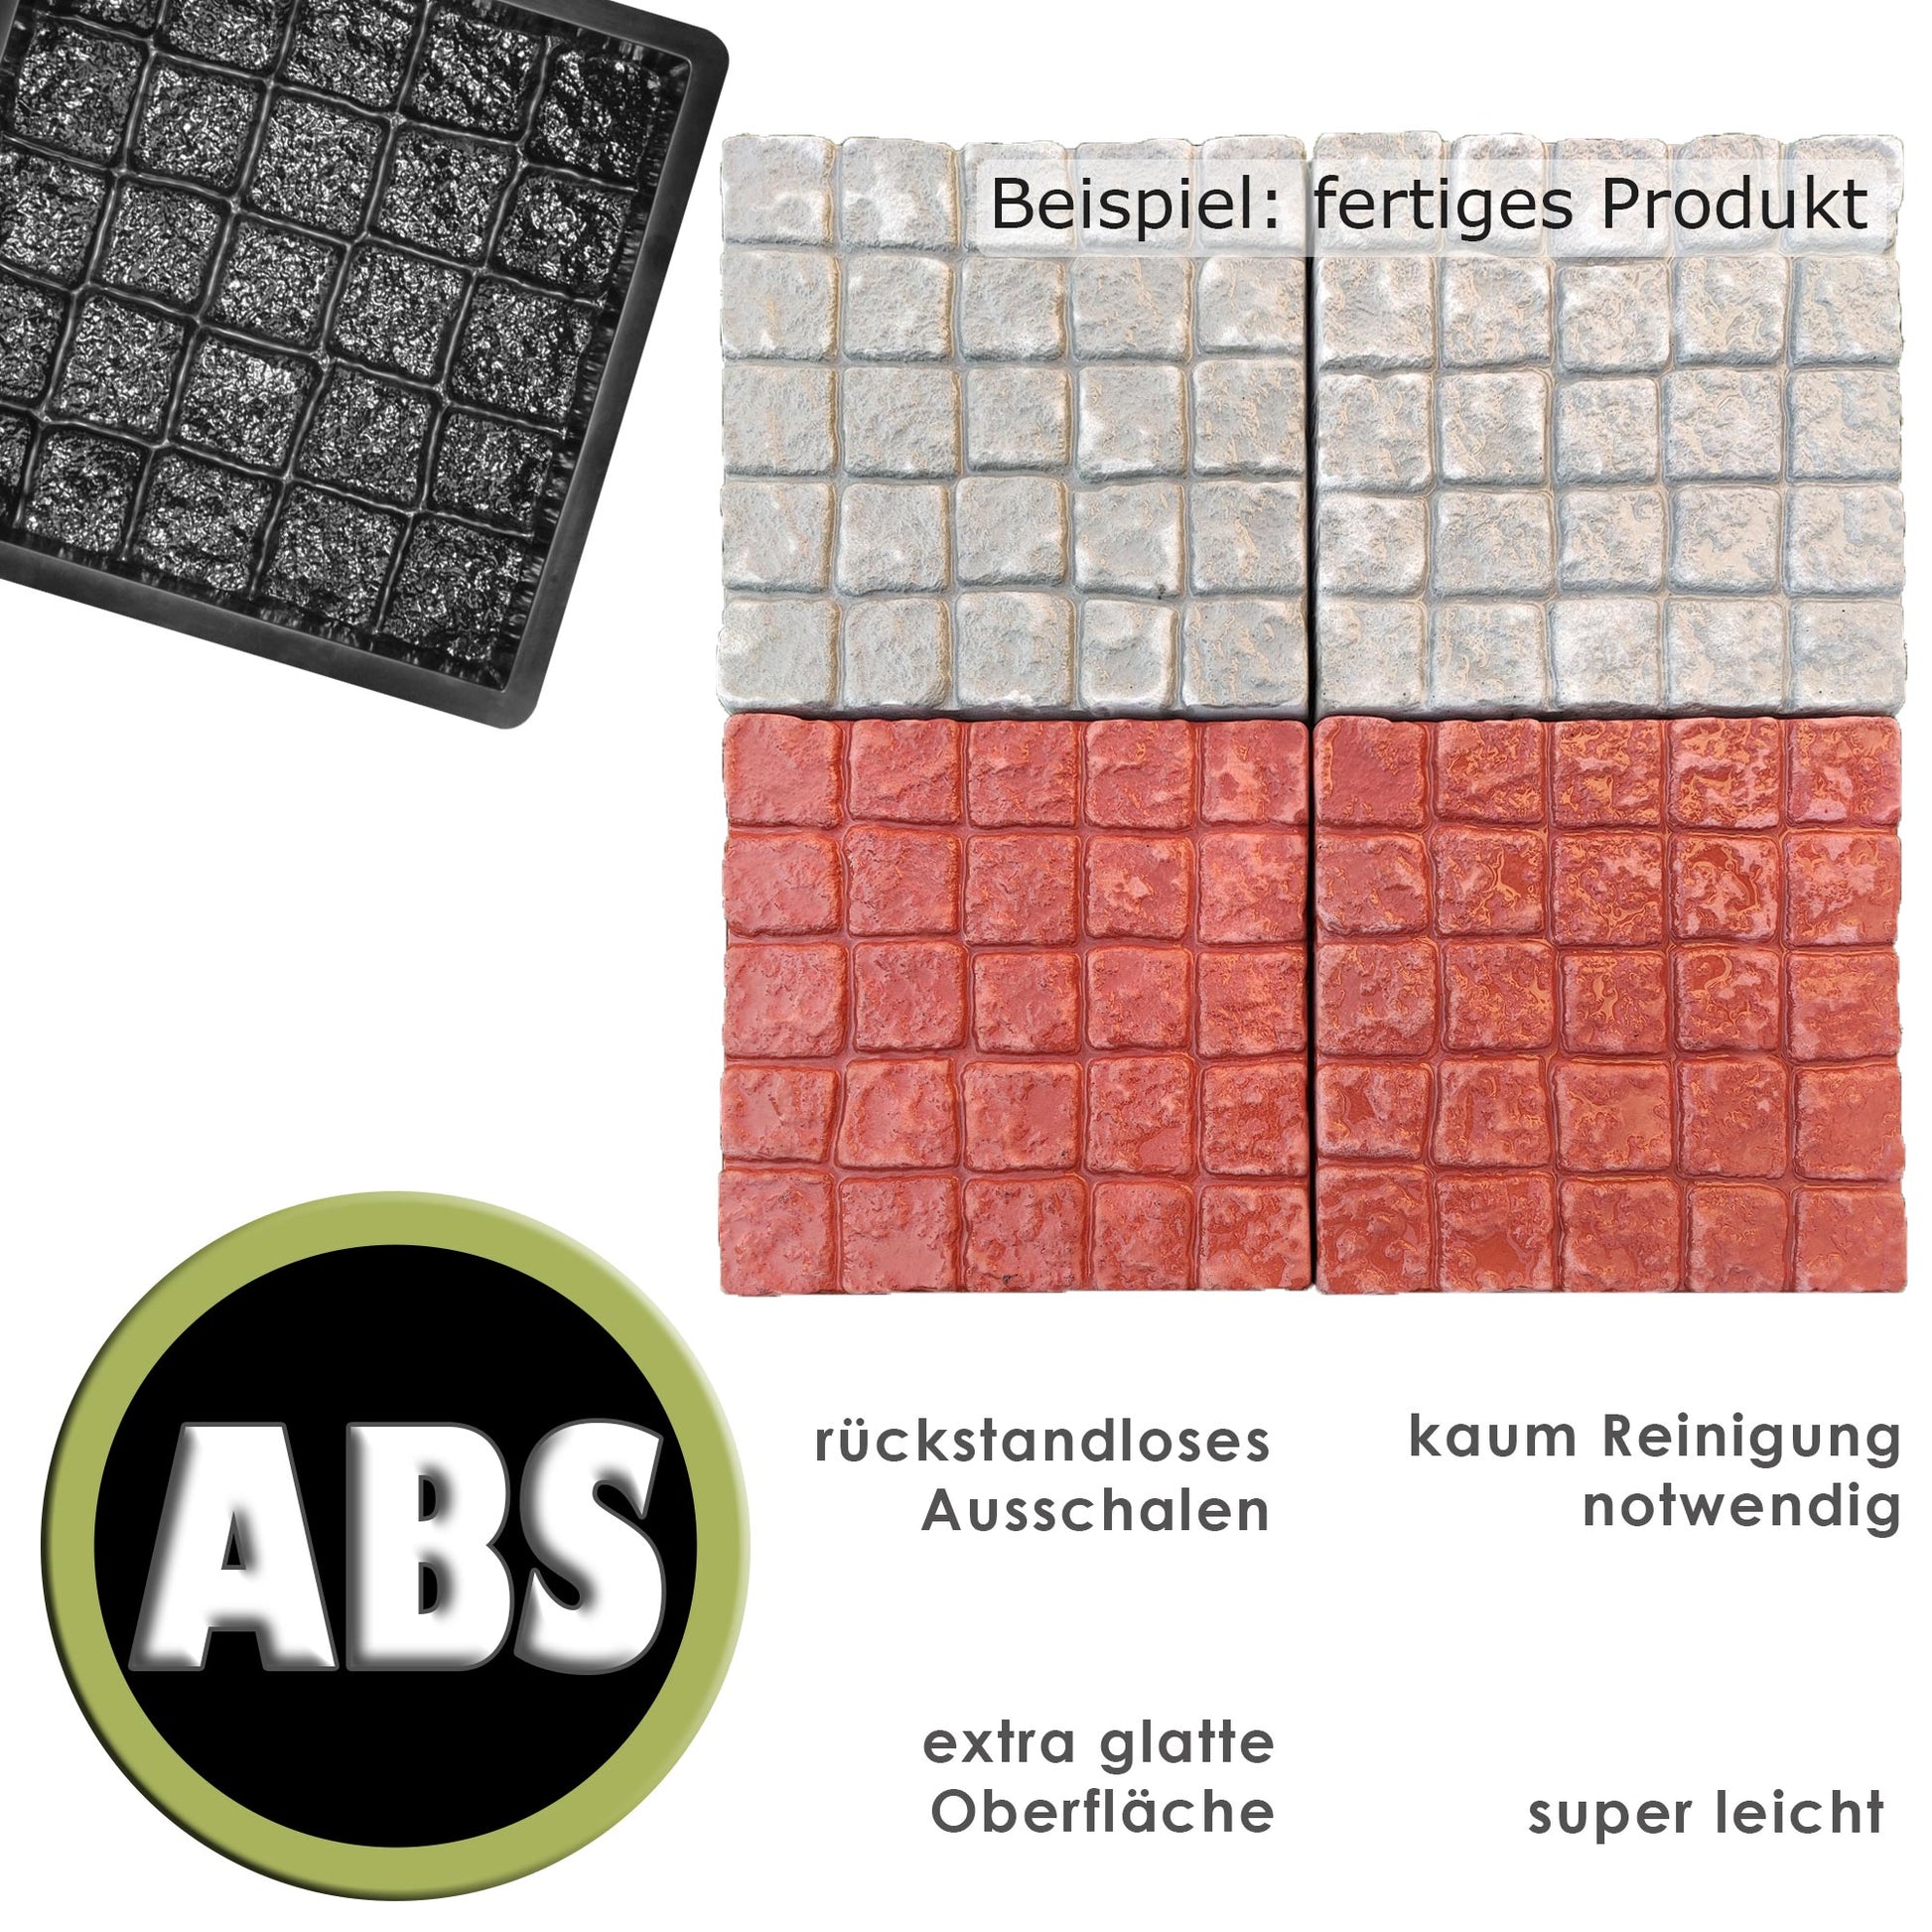 ABS-Giessform für Bodenpflasterpaneele 50x50cm - Fertigprodukt